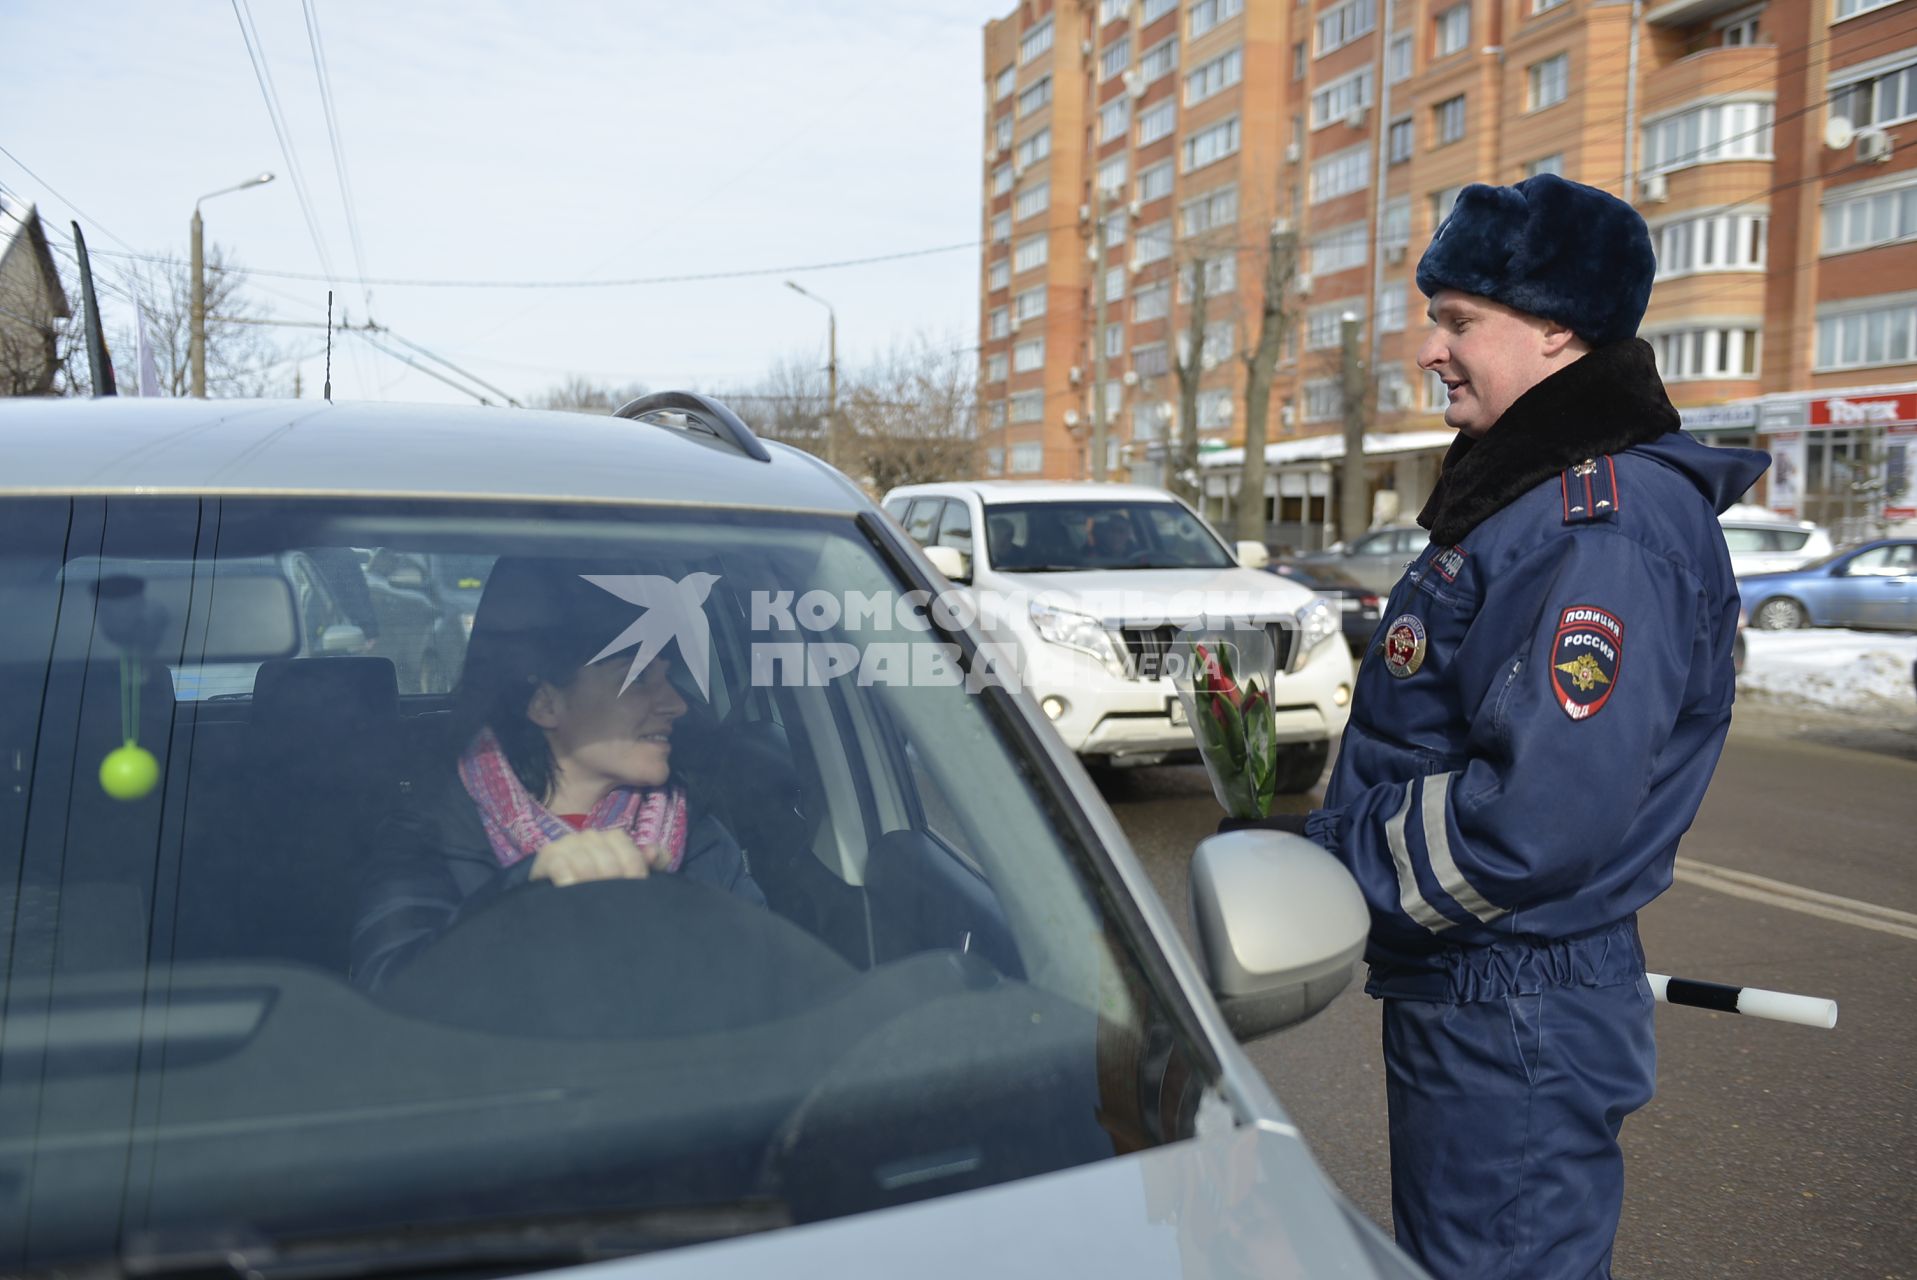 Тула. Сотрудник ДПС  поздравляет женщину-водителя в преддверии празднования Международного женского дня.